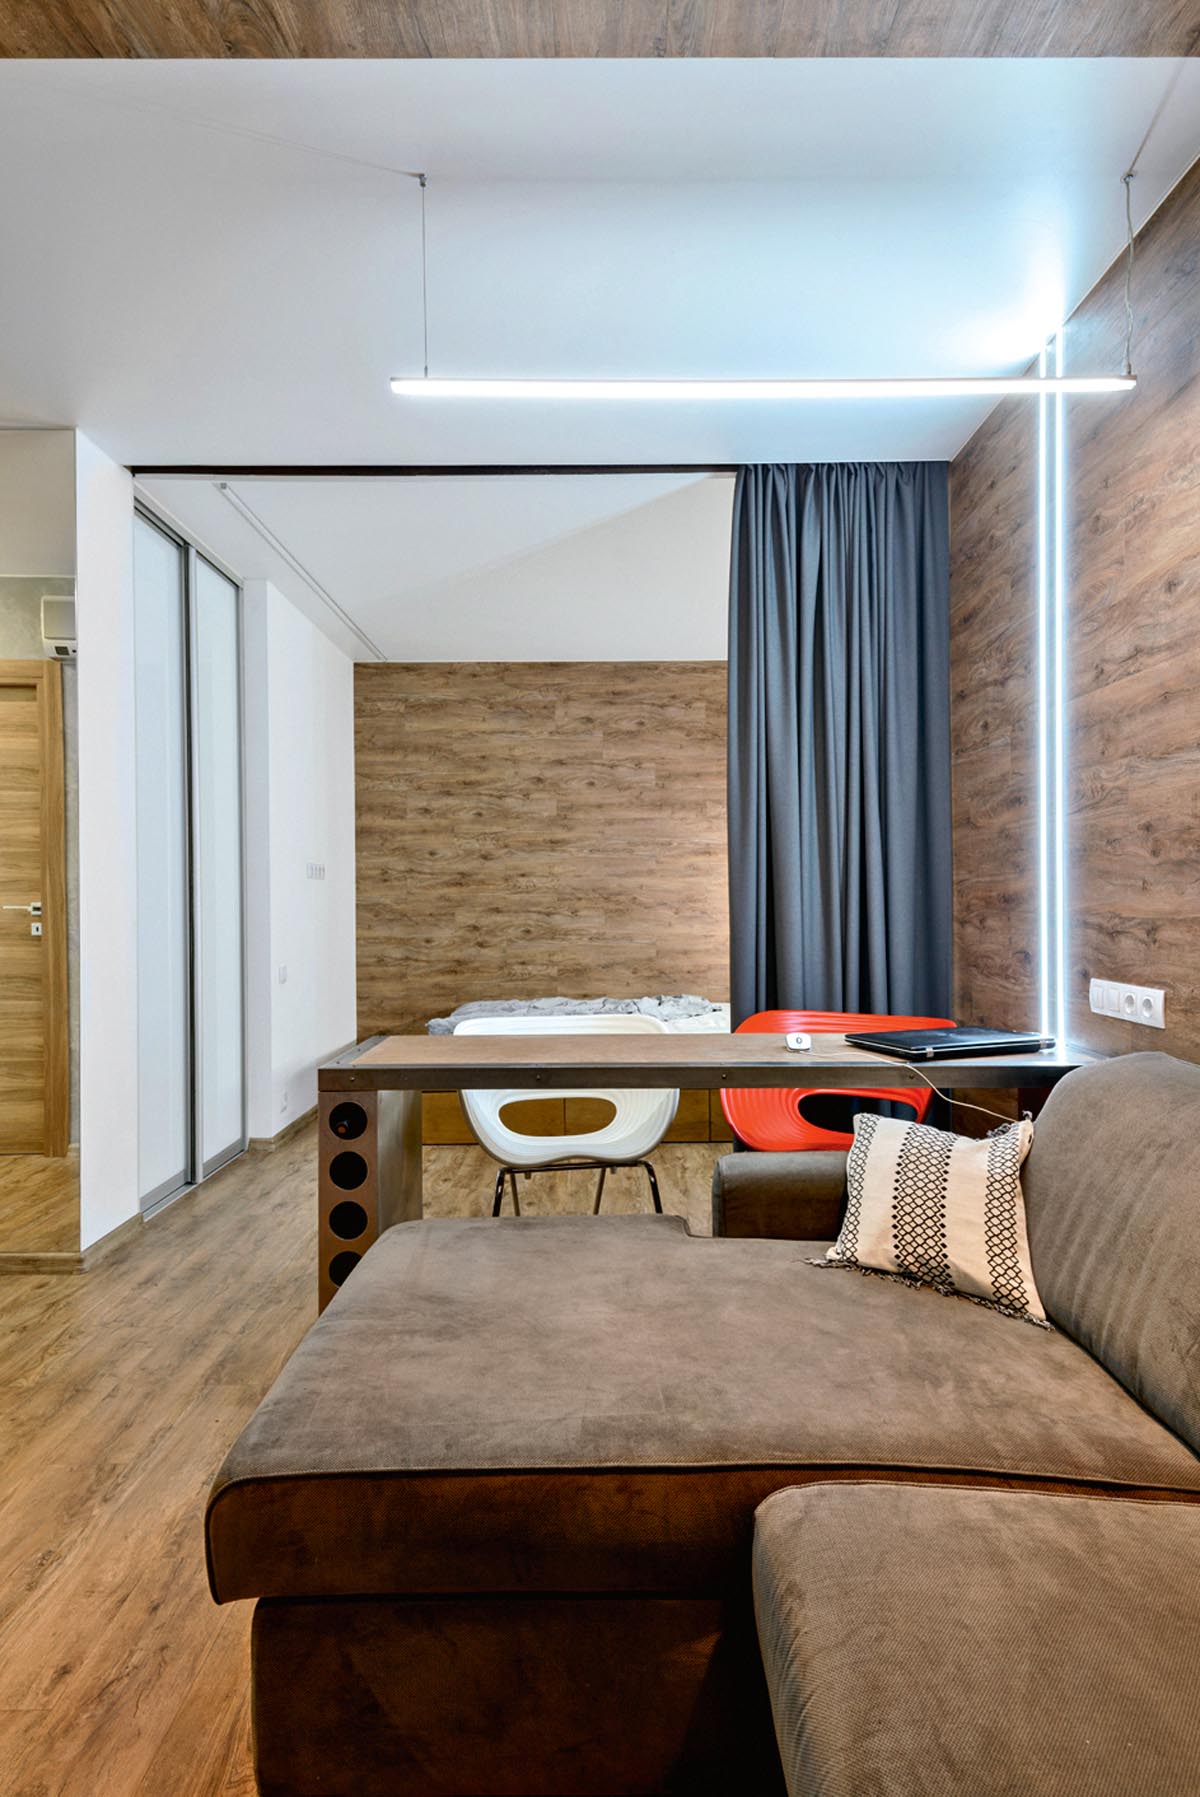 Как визуально расширить узкую комнату:Верные решения для отделки маленькой квартиры